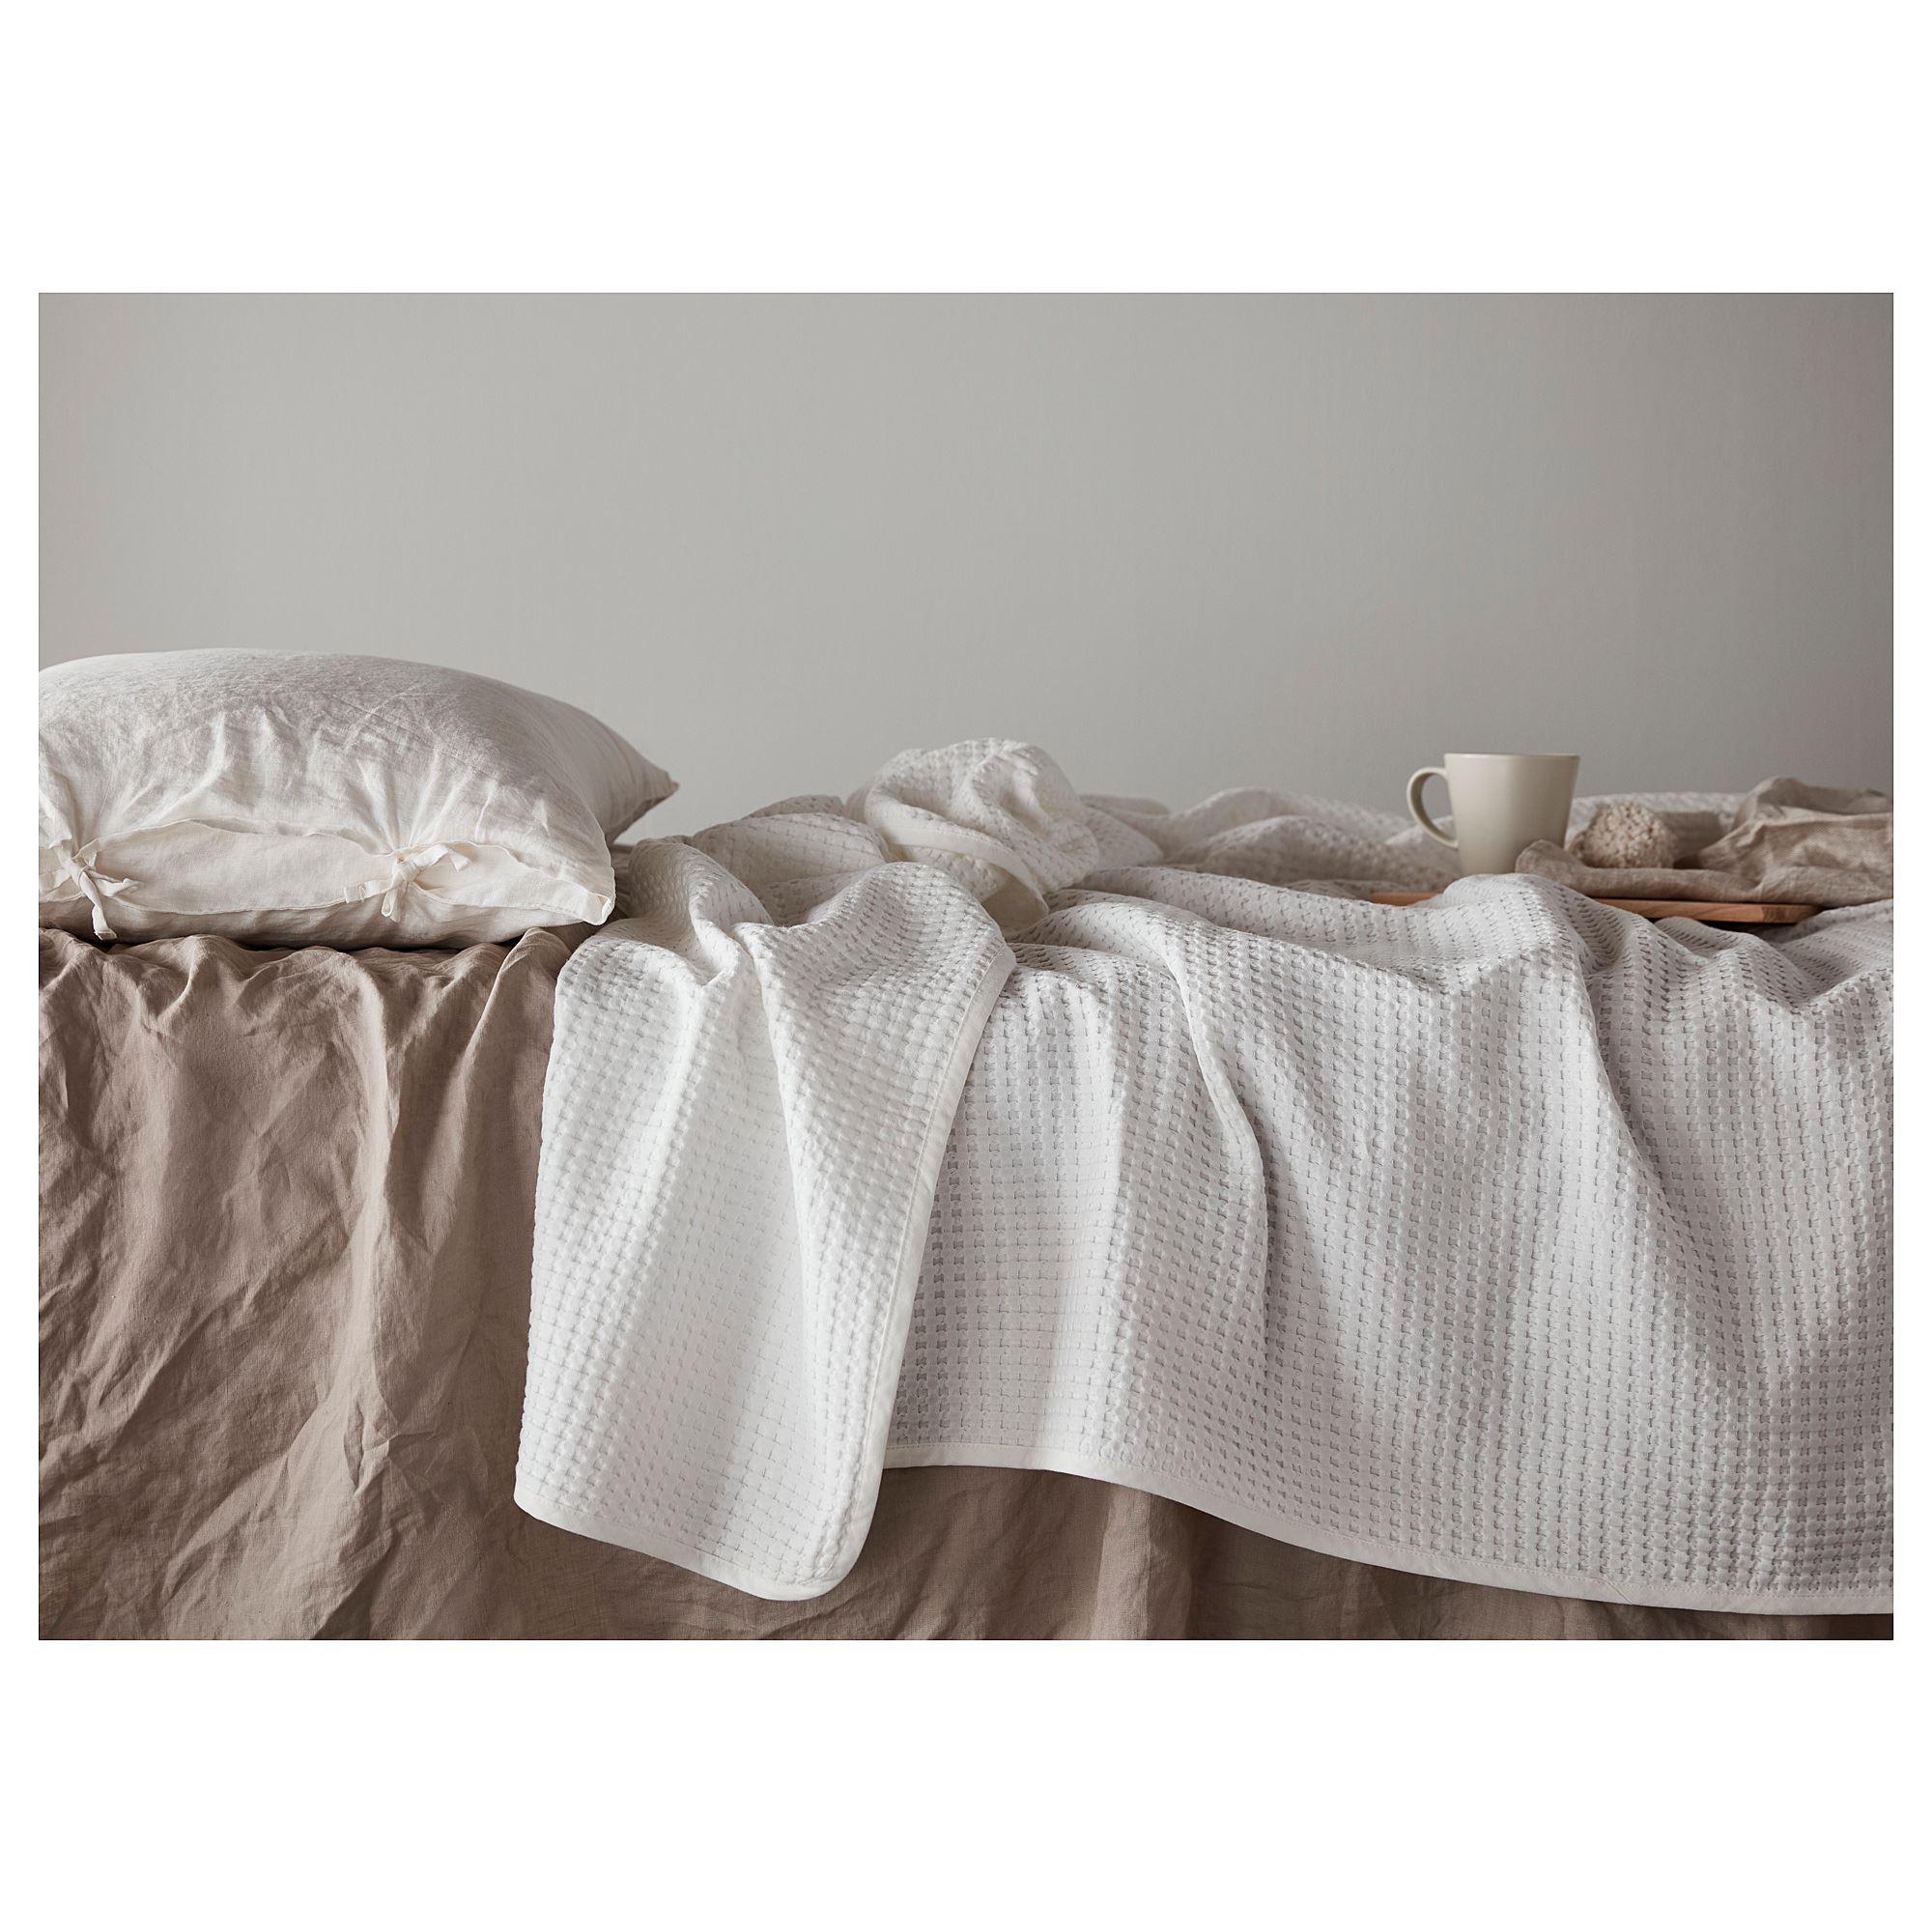 VARELD çift kişilik yatak örtüsü beyaz 230x250 cm IKEA Ev Tekstili